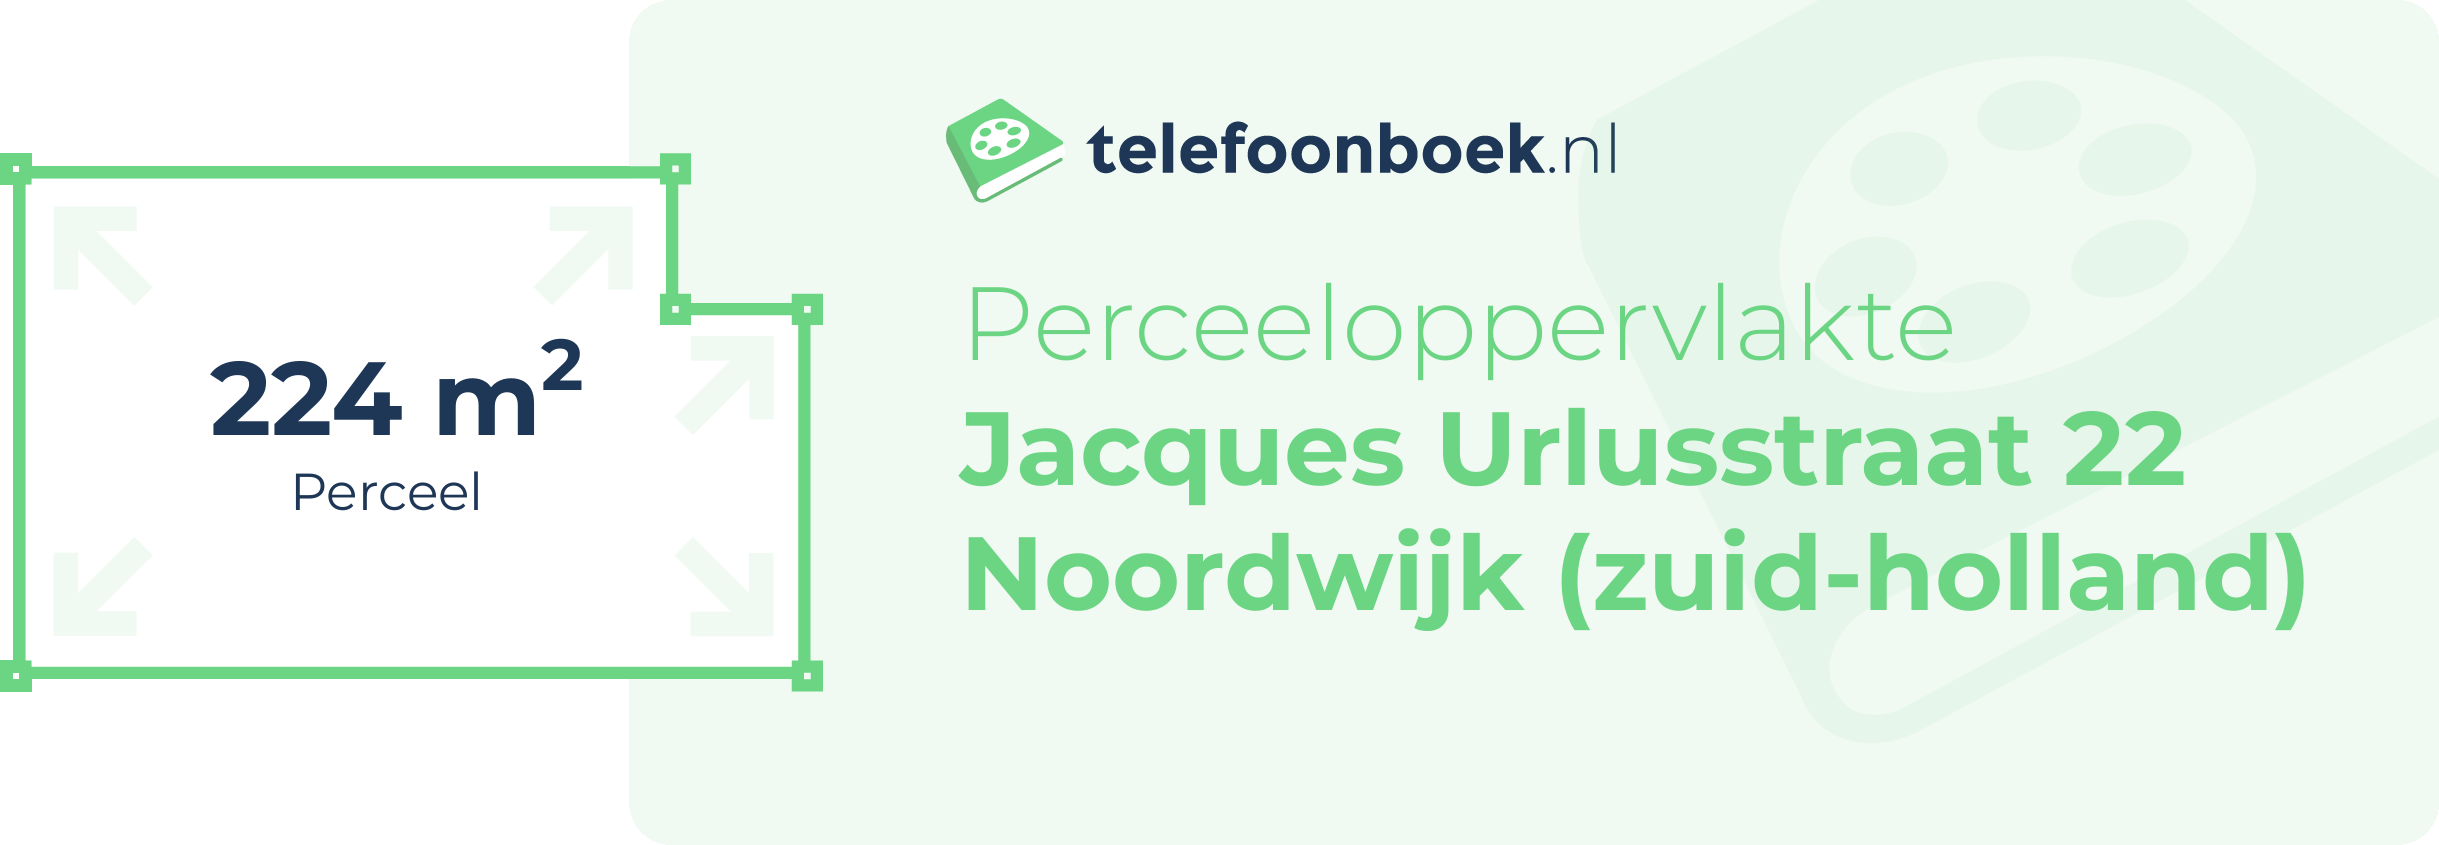 Perceeloppervlakte Jacques Urlusstraat 22 Noordwijk (Zuid-Holland)